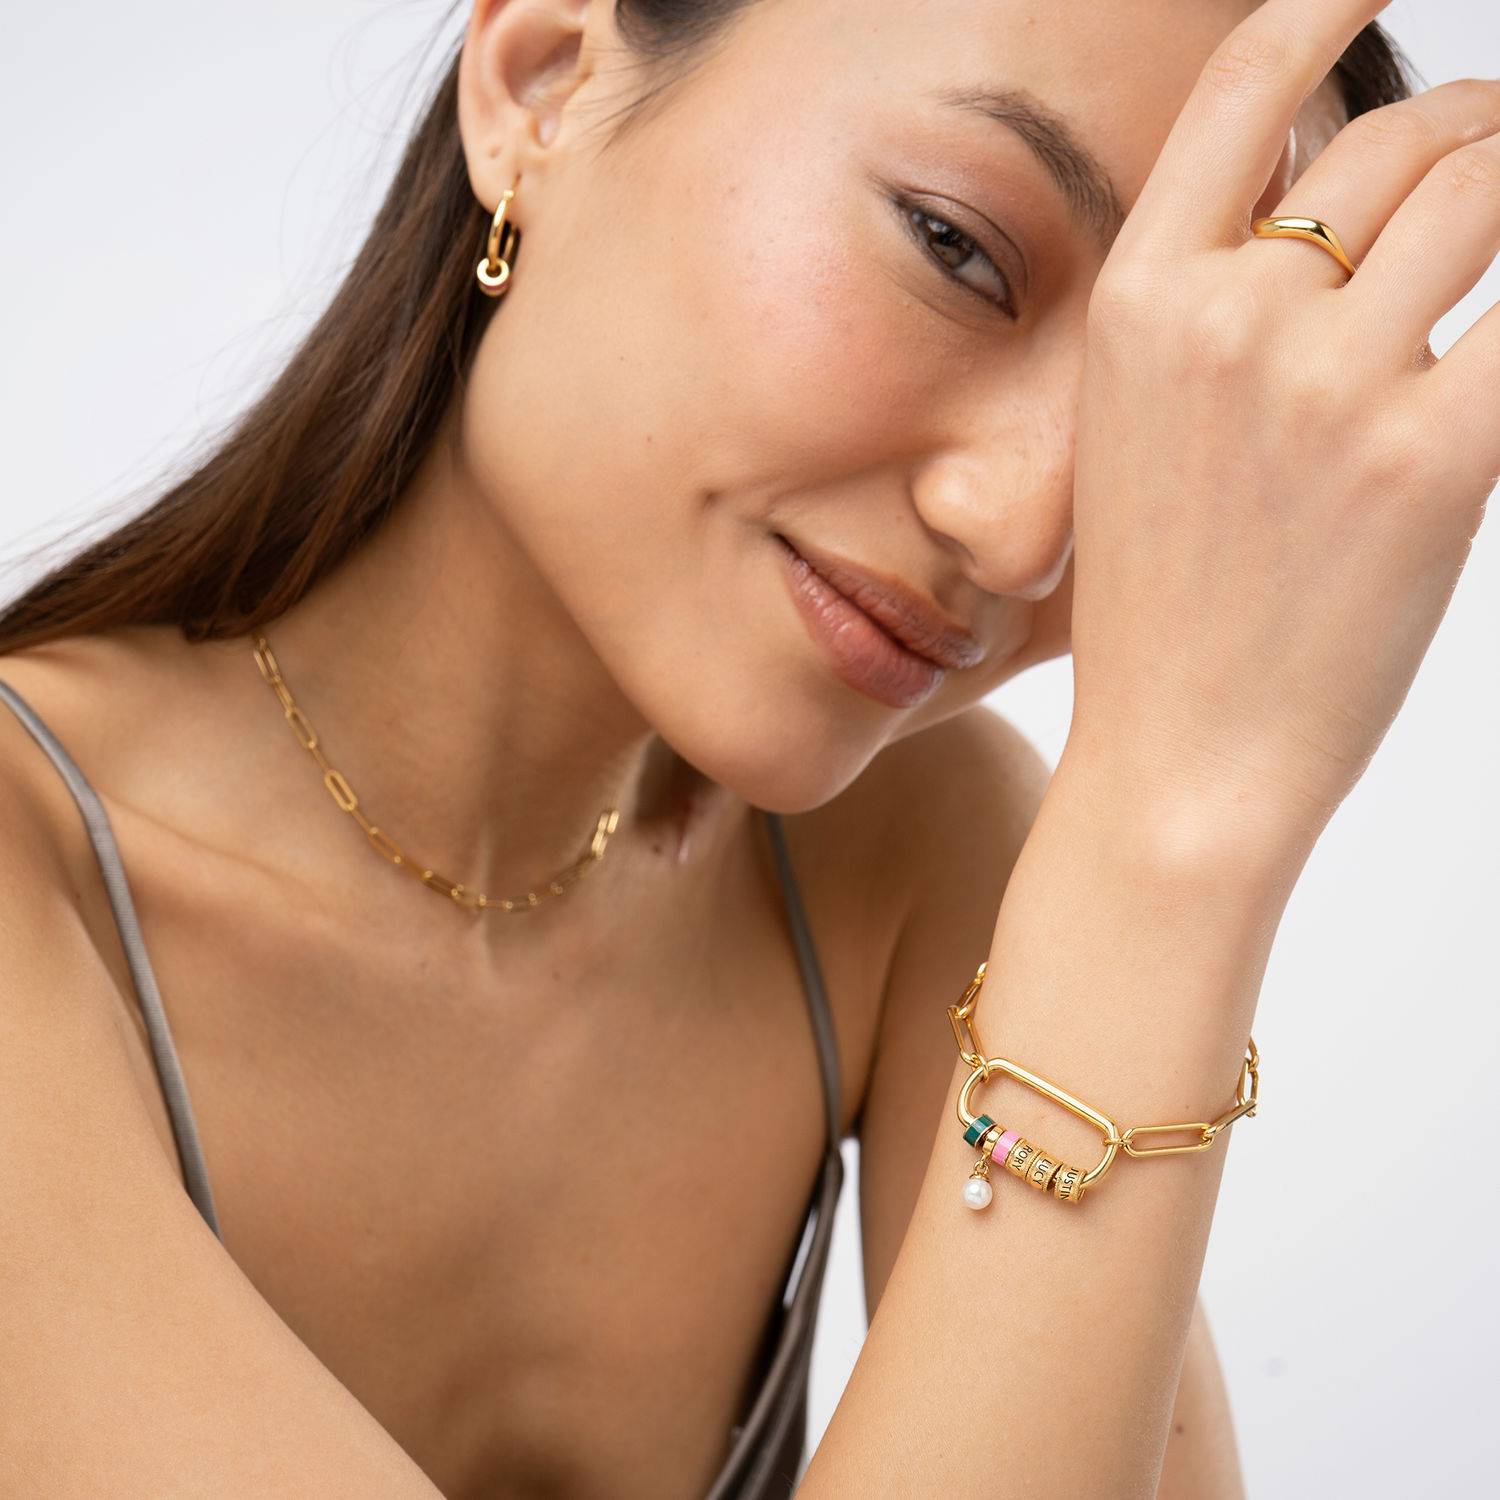 Linda armband met ovale sluiting en parel in 18k goud vermeil-2 Productfoto